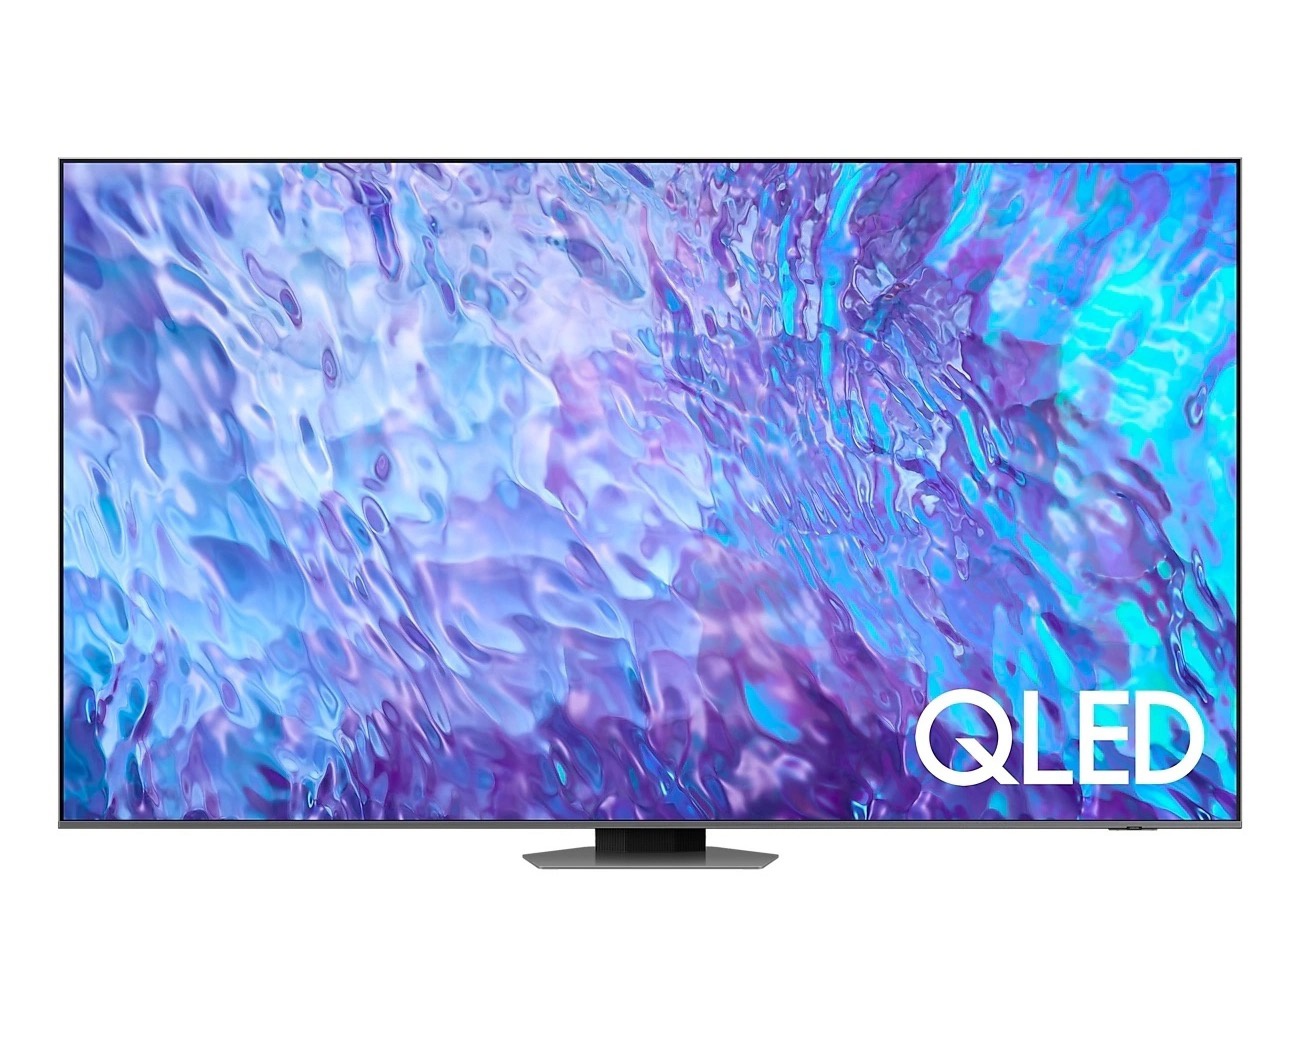 三星 98 英寸新品巨幕电视 Q80Z 正式上市，售价 39999 元